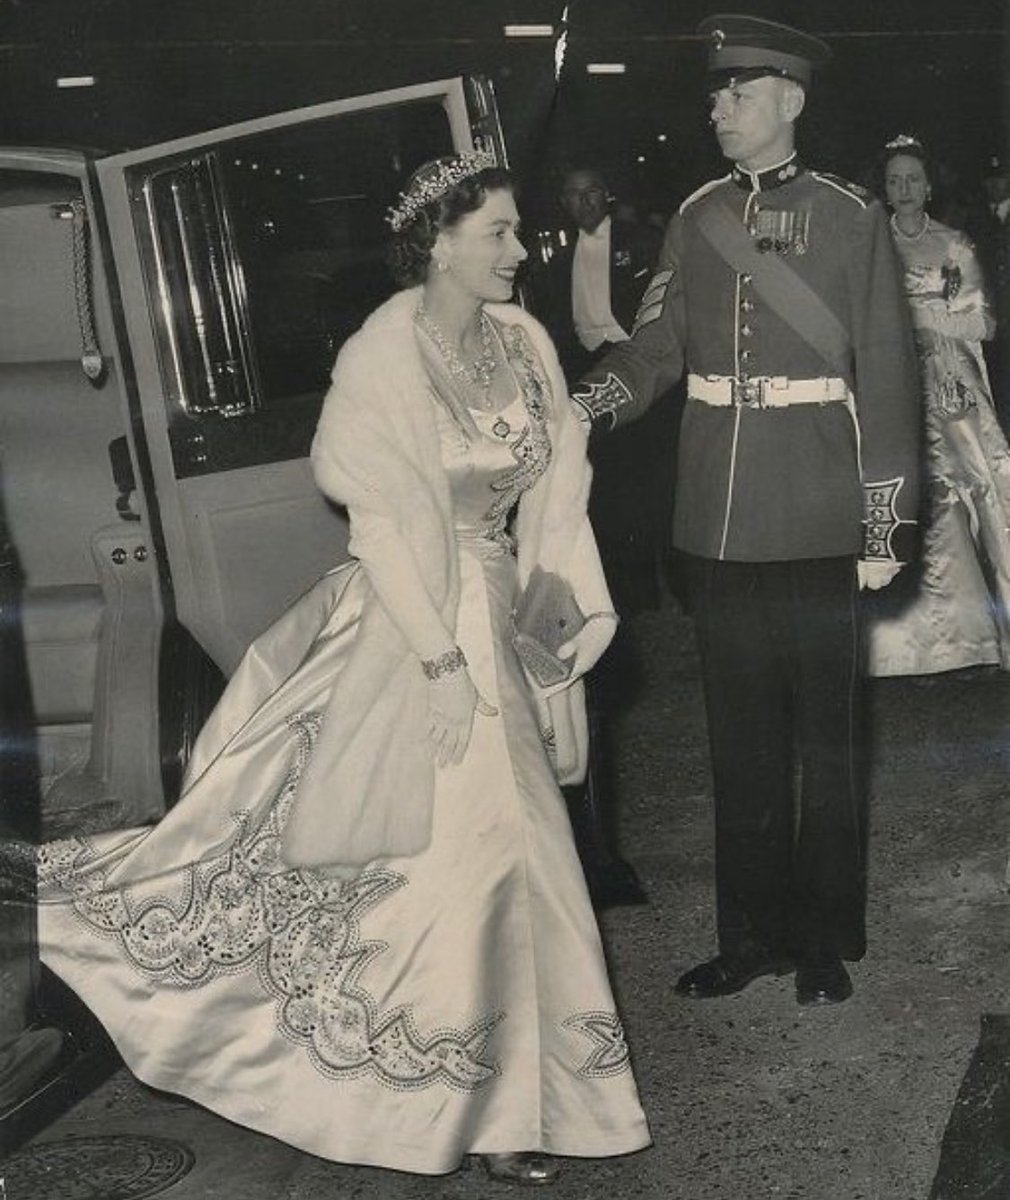 Queen Elizabeth II arriving at the tercentenary dance of the Grenadier Guards Regiment, Knightsbridge, London, England, 1956. #QueenElizabethII